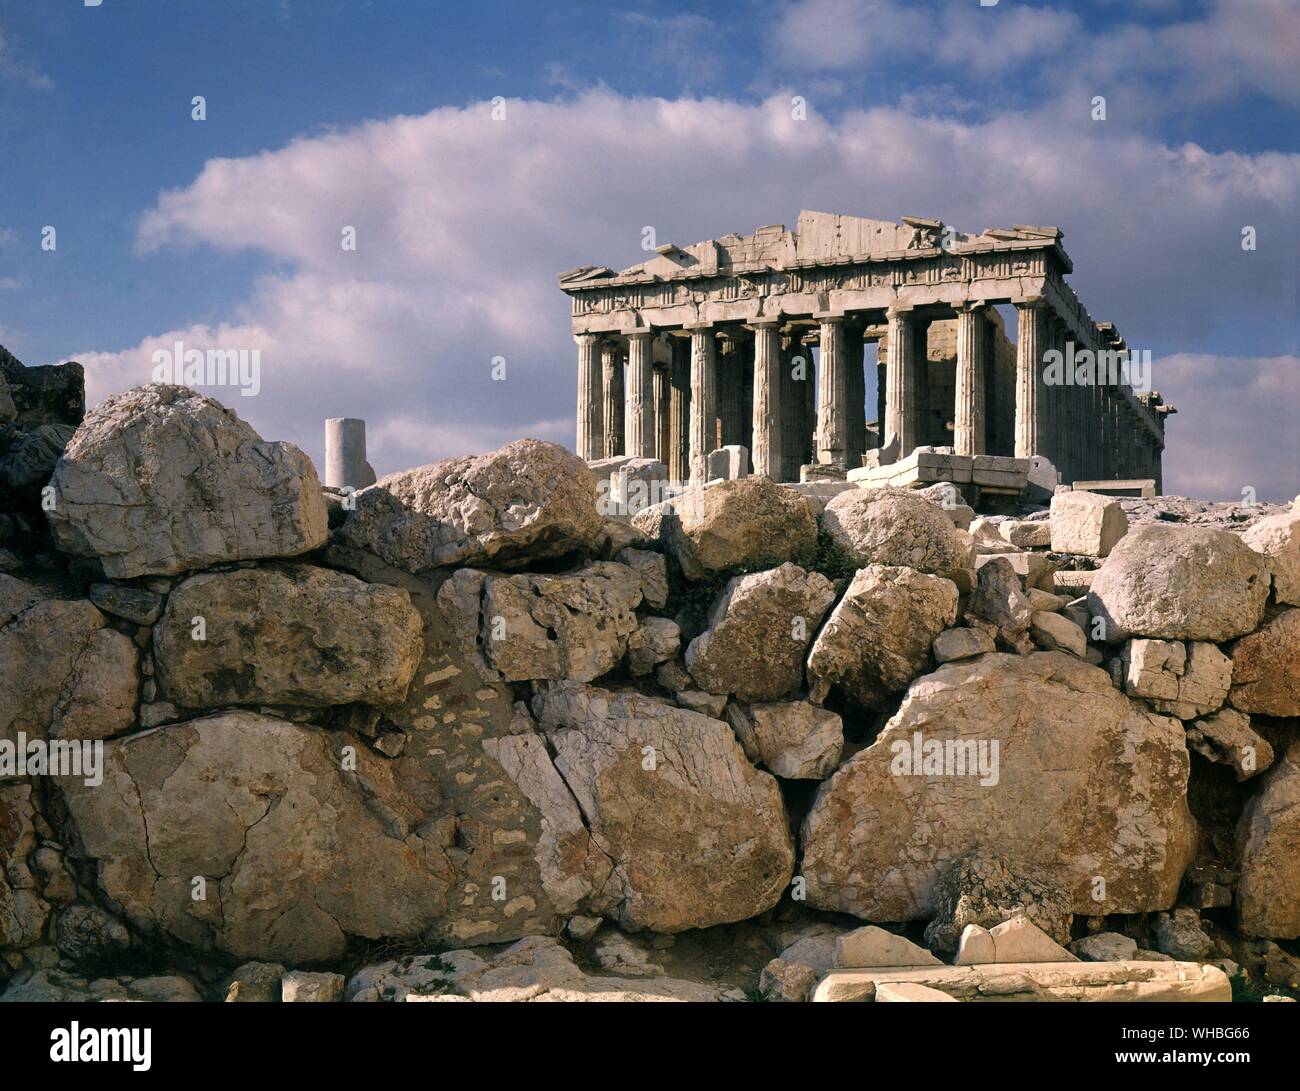 Le Parthénon - un temple construit pour la déesse grecque Athéna dans le 5ème siècle avant J.-C. sur l'acropole d'Athènes.. Banque D'Images